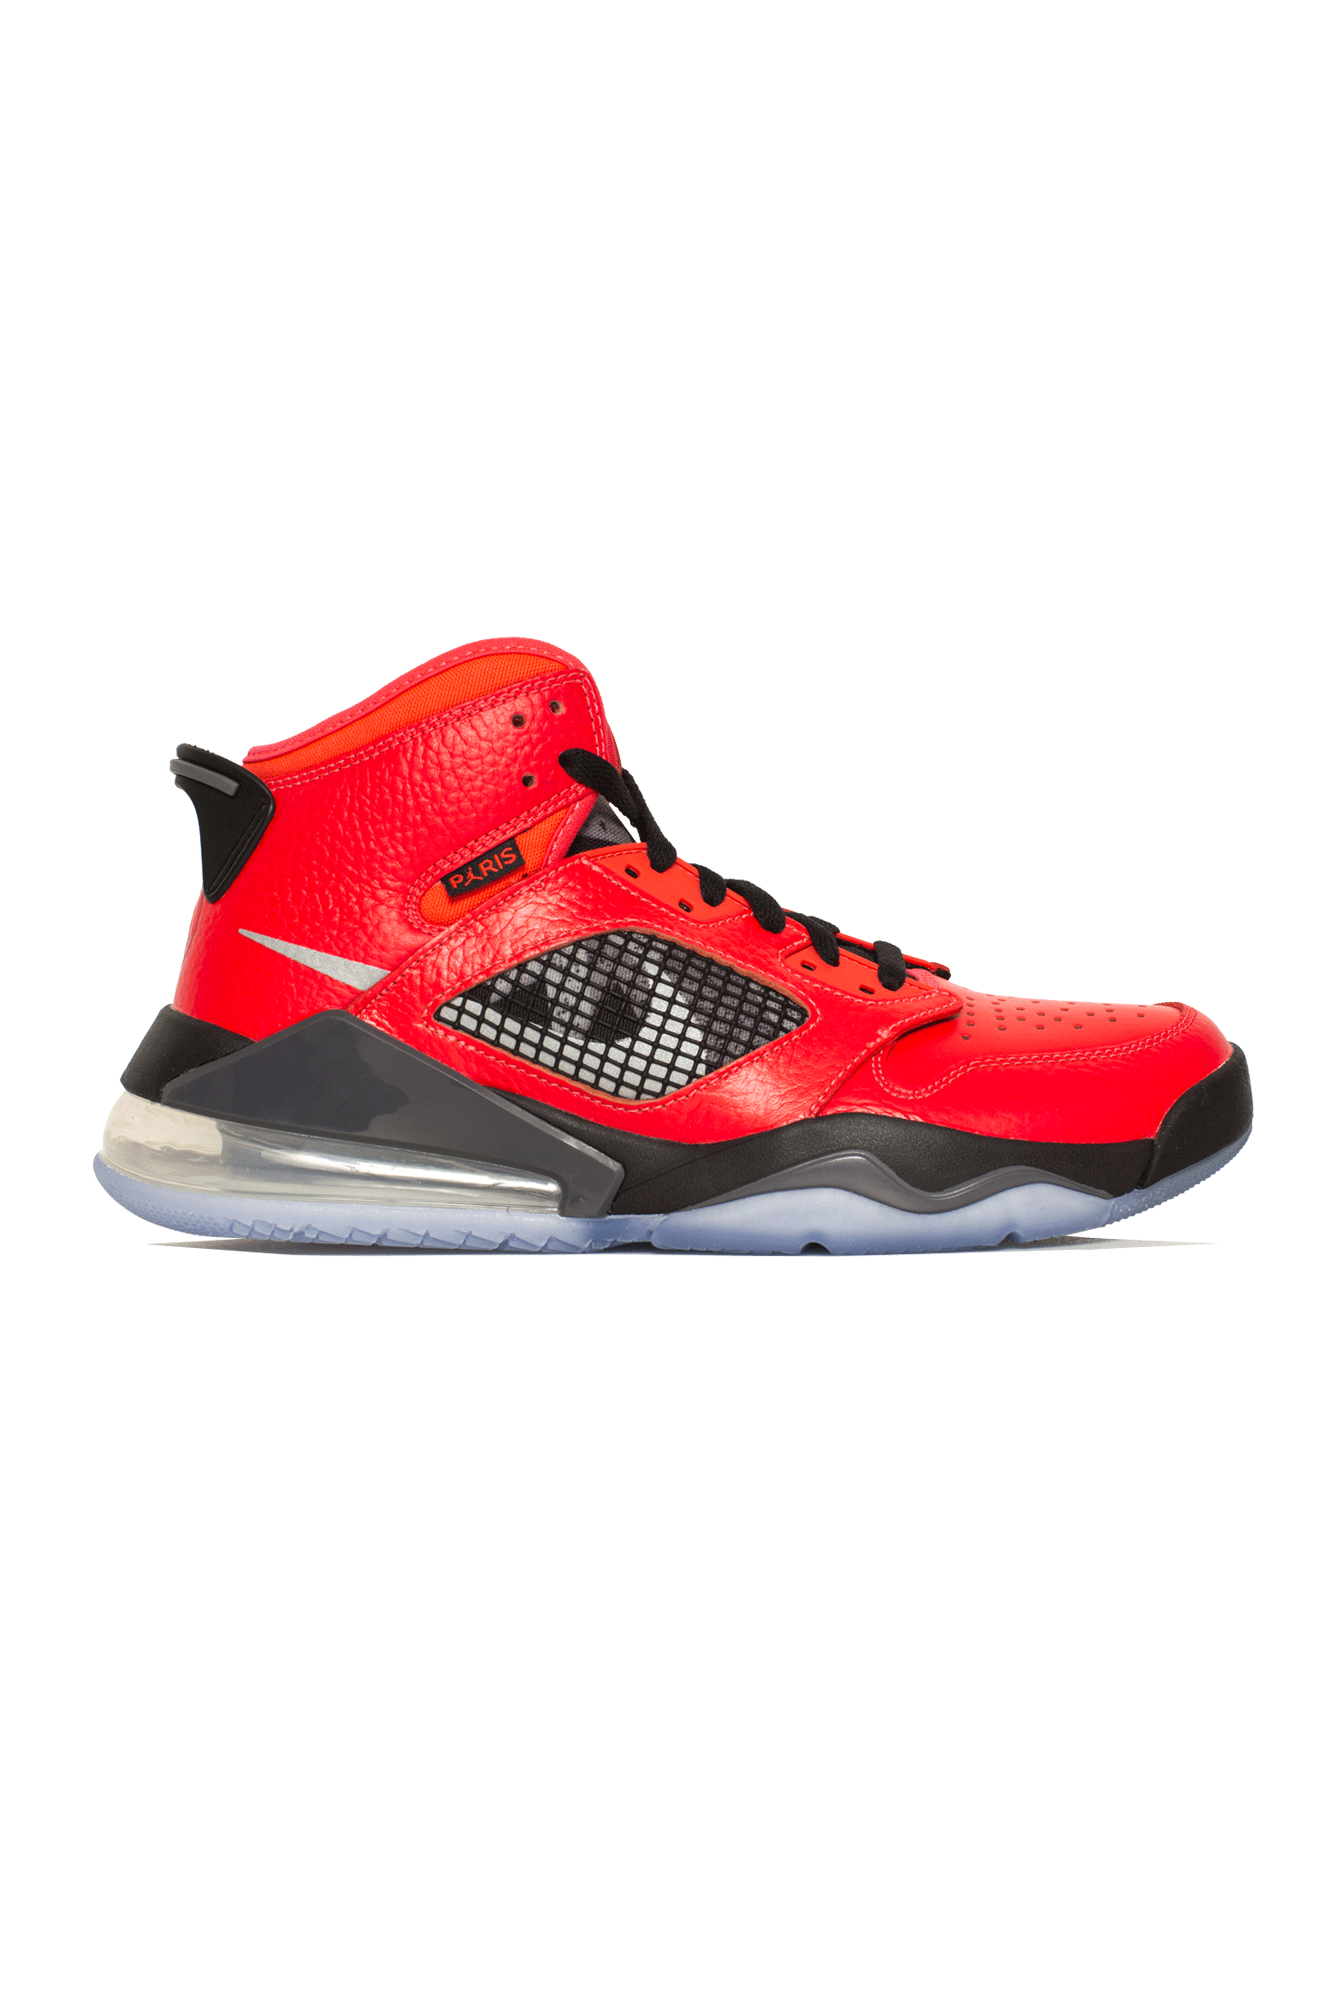 Jordan Brand Sneakers Mars 270 PSG Red 